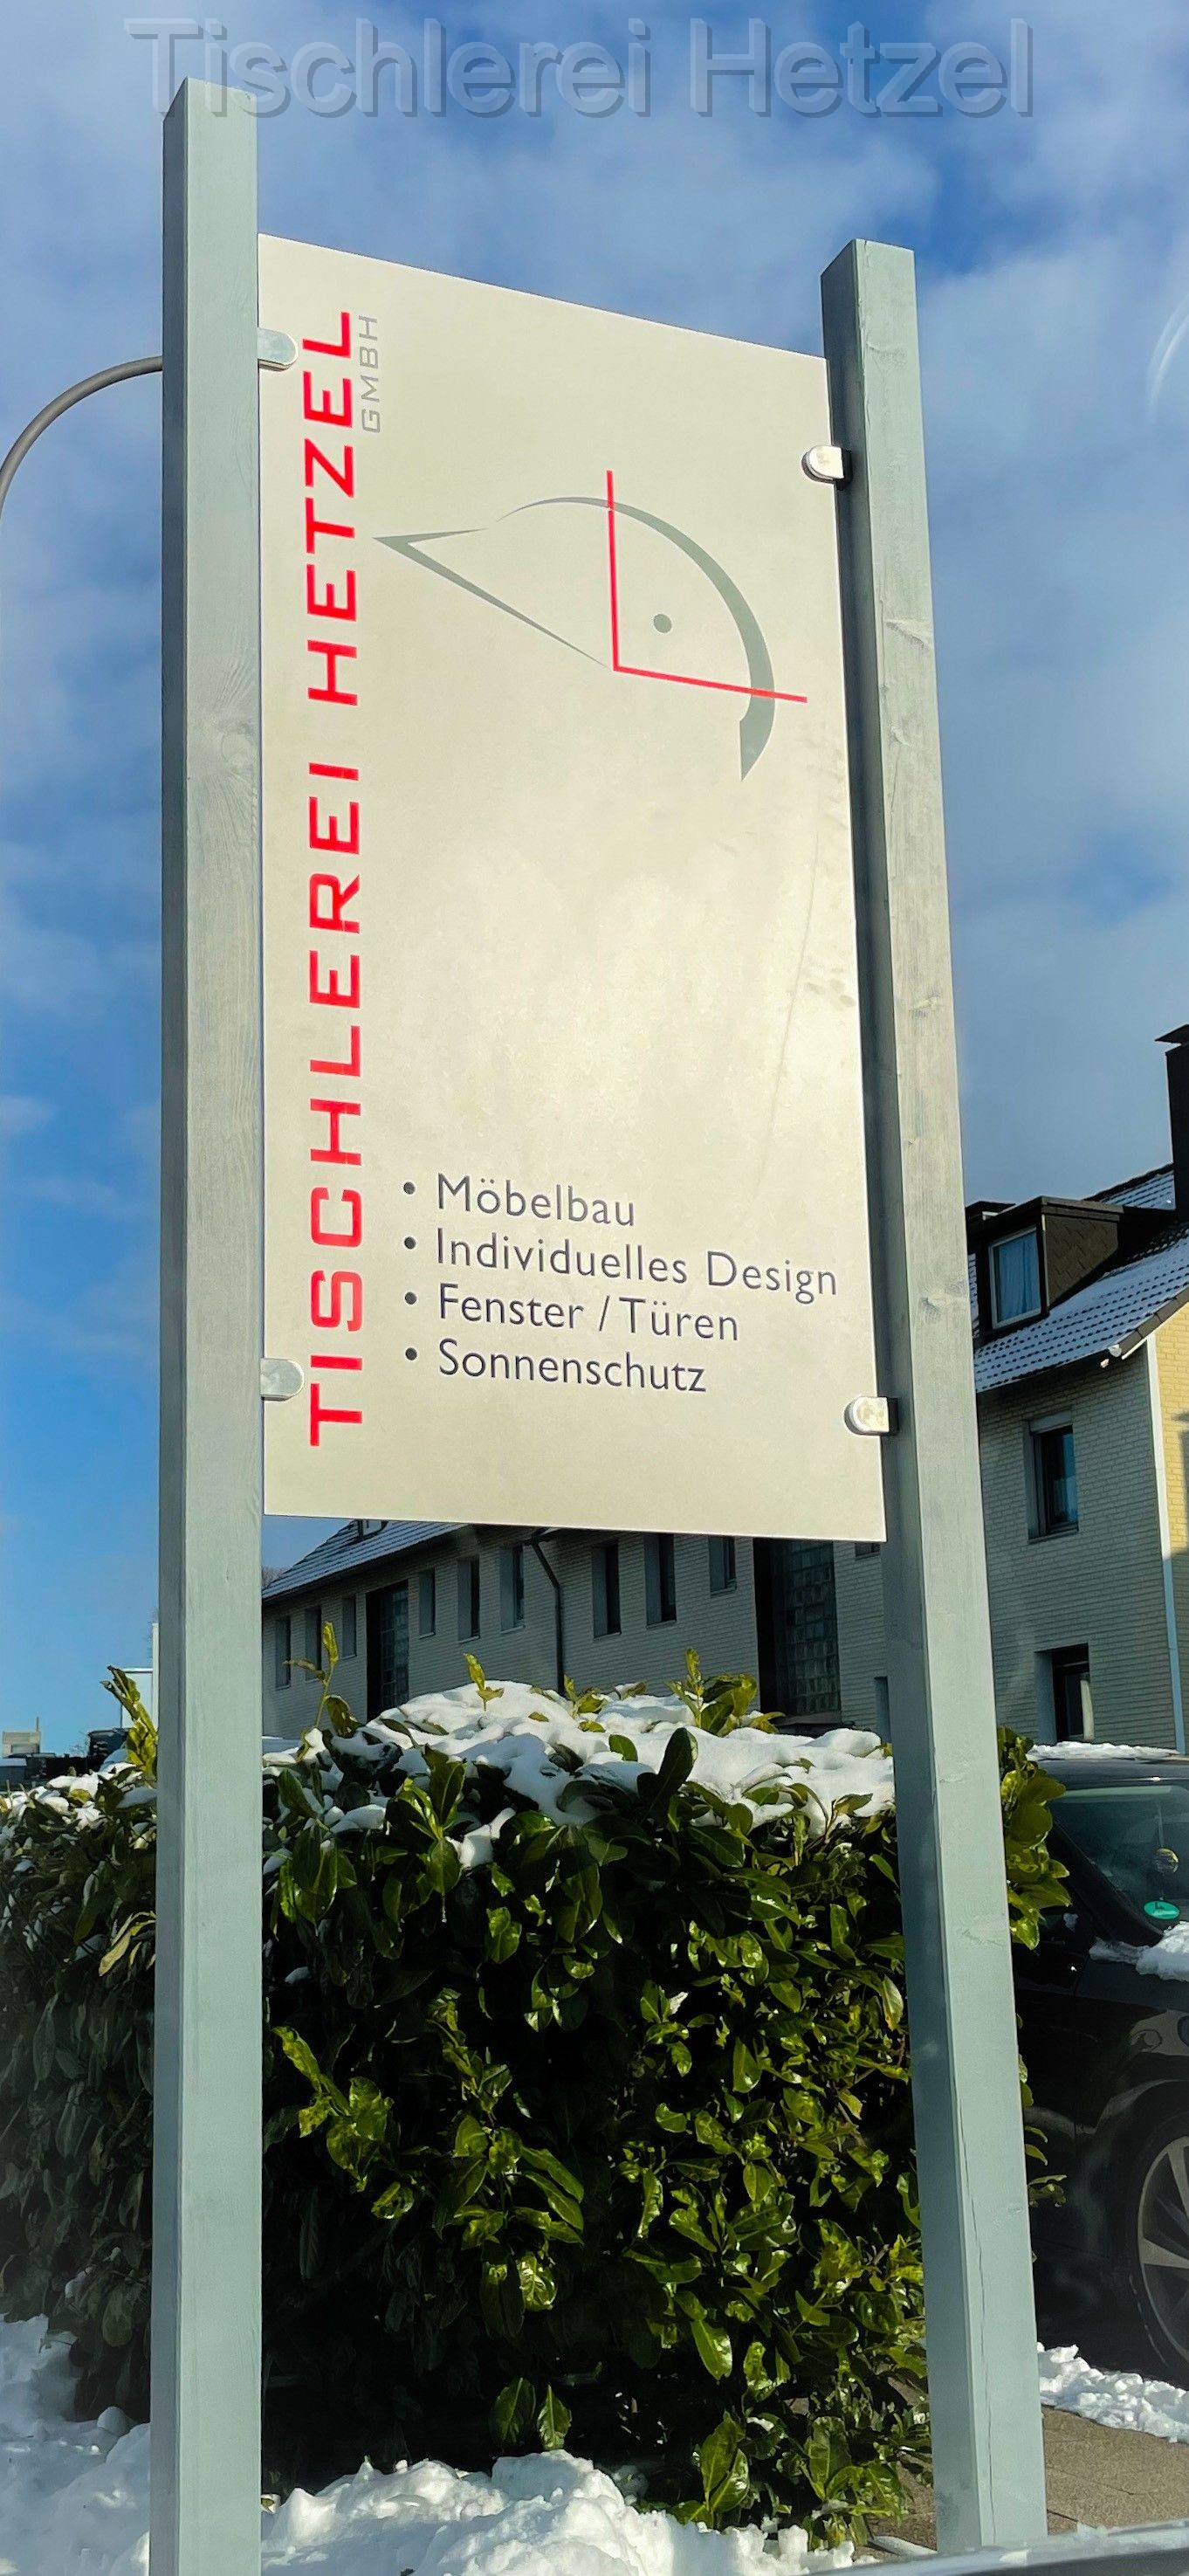 Bilder Tischlerei Hetzel GmbH